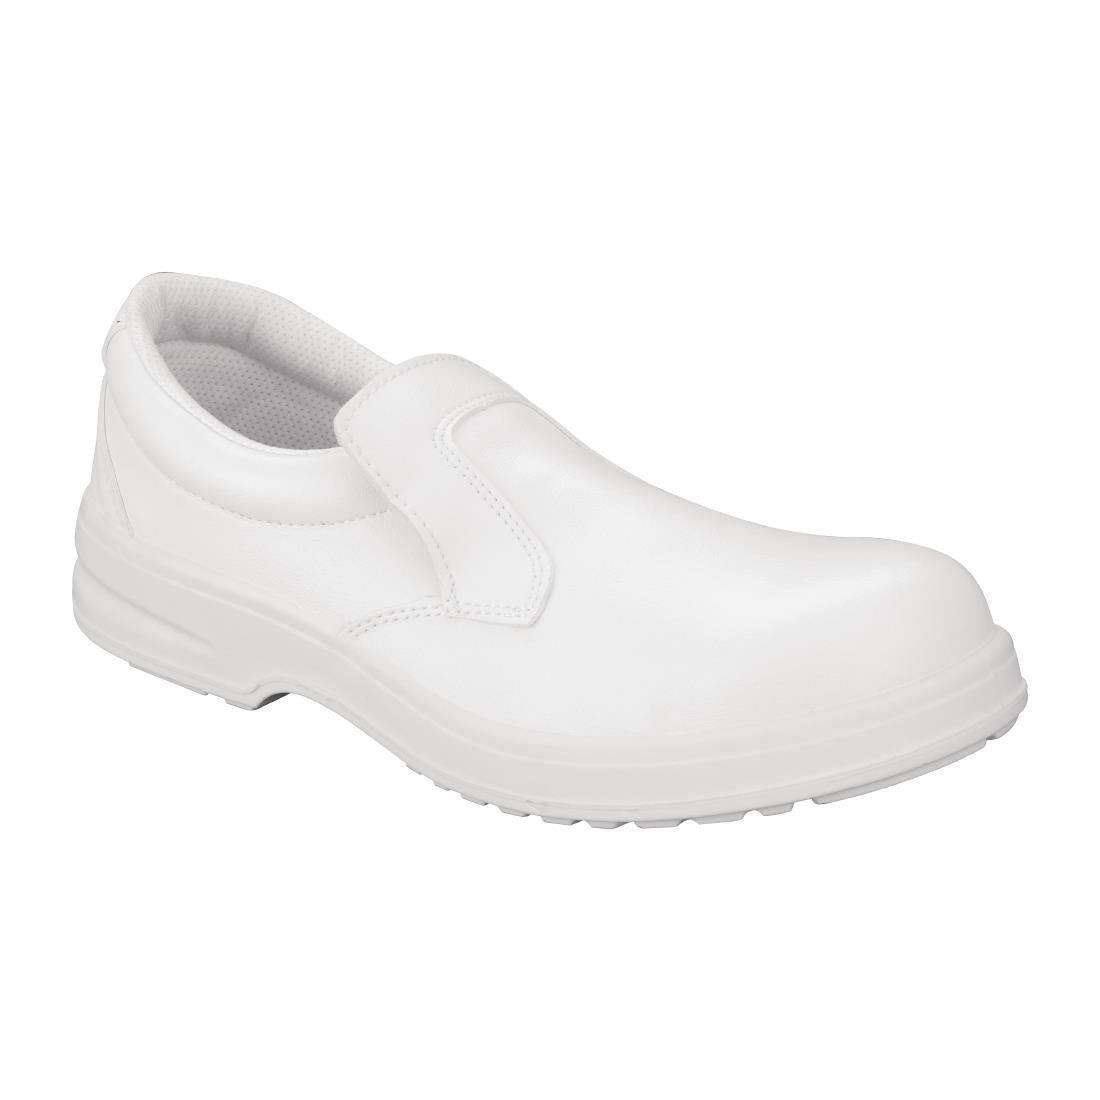 Slipbuster Footwear Slipbuster Lite Safety Slip On White - Size 38